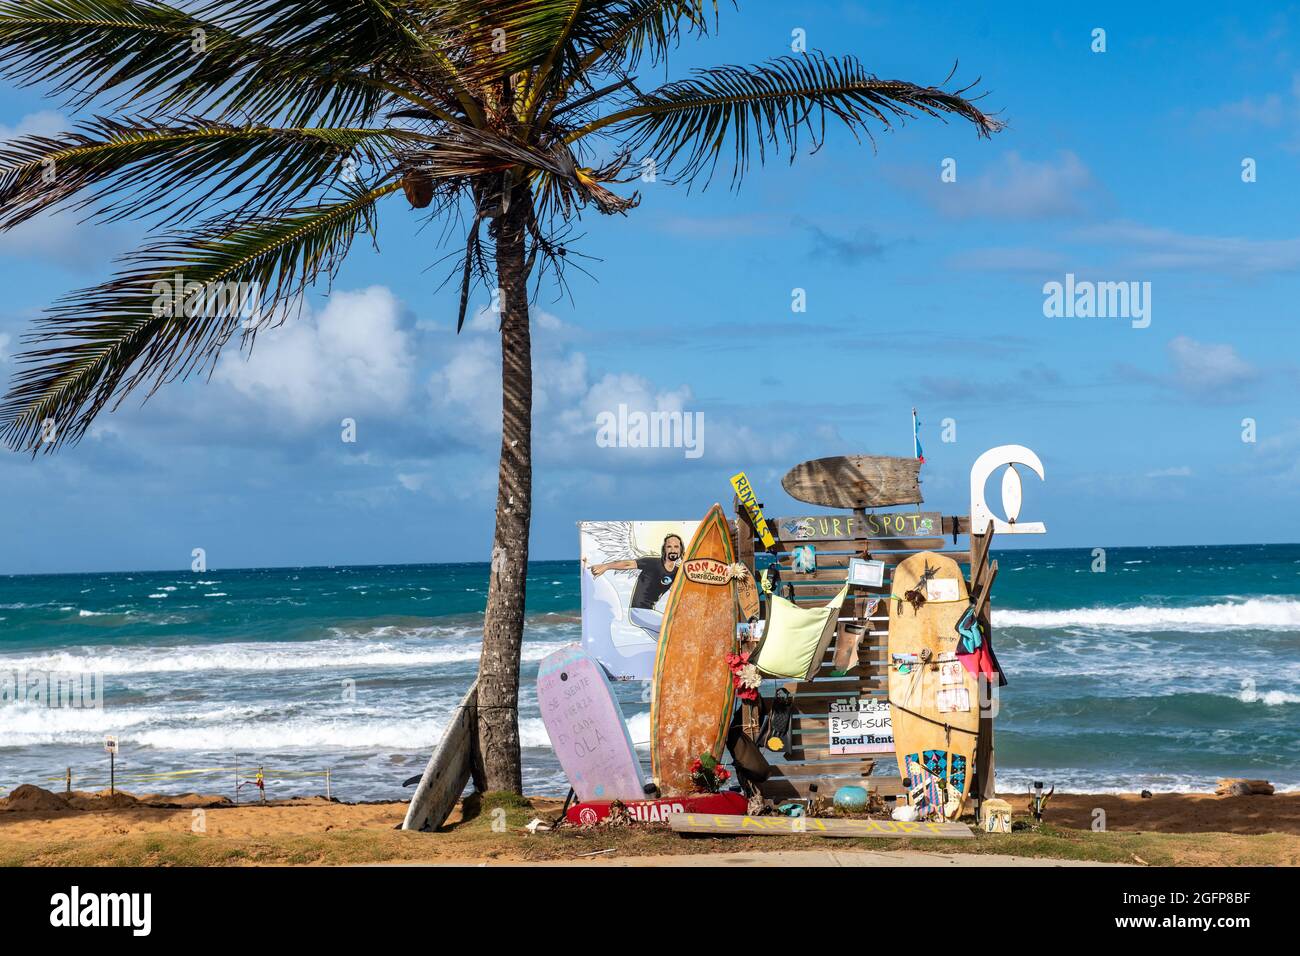 Eine Anzeige für Surfunterricht unter einer Palme am Strand - Puerto Rico Stockfoto